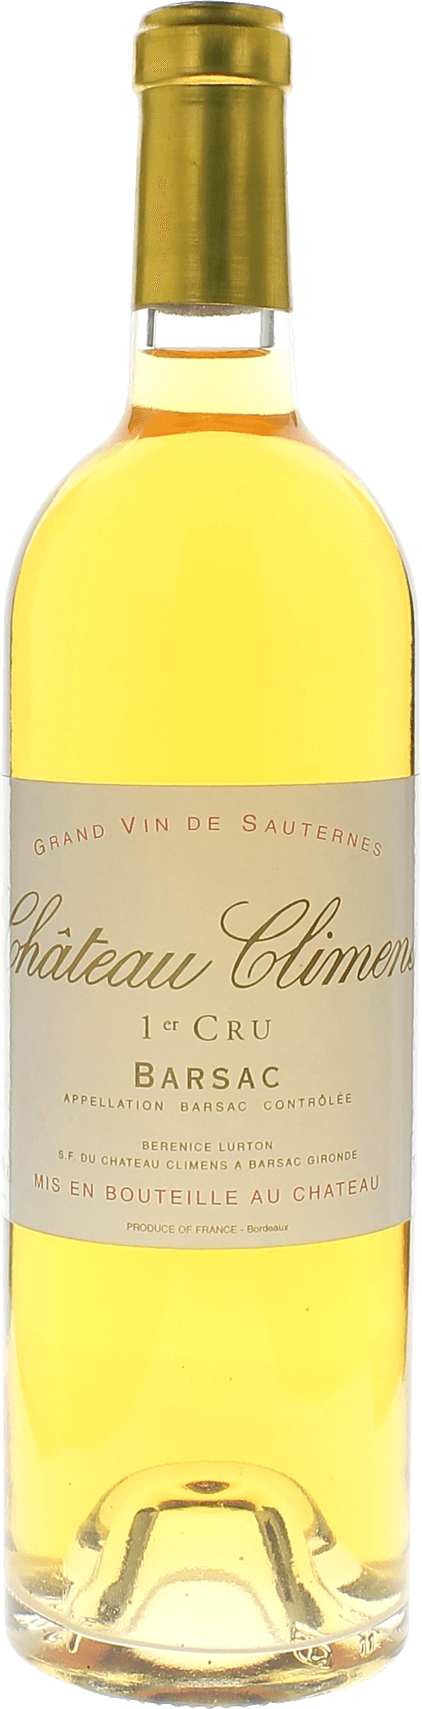 Climens 1991 1er cru Sauternes Barsac, Bordeaux blanc